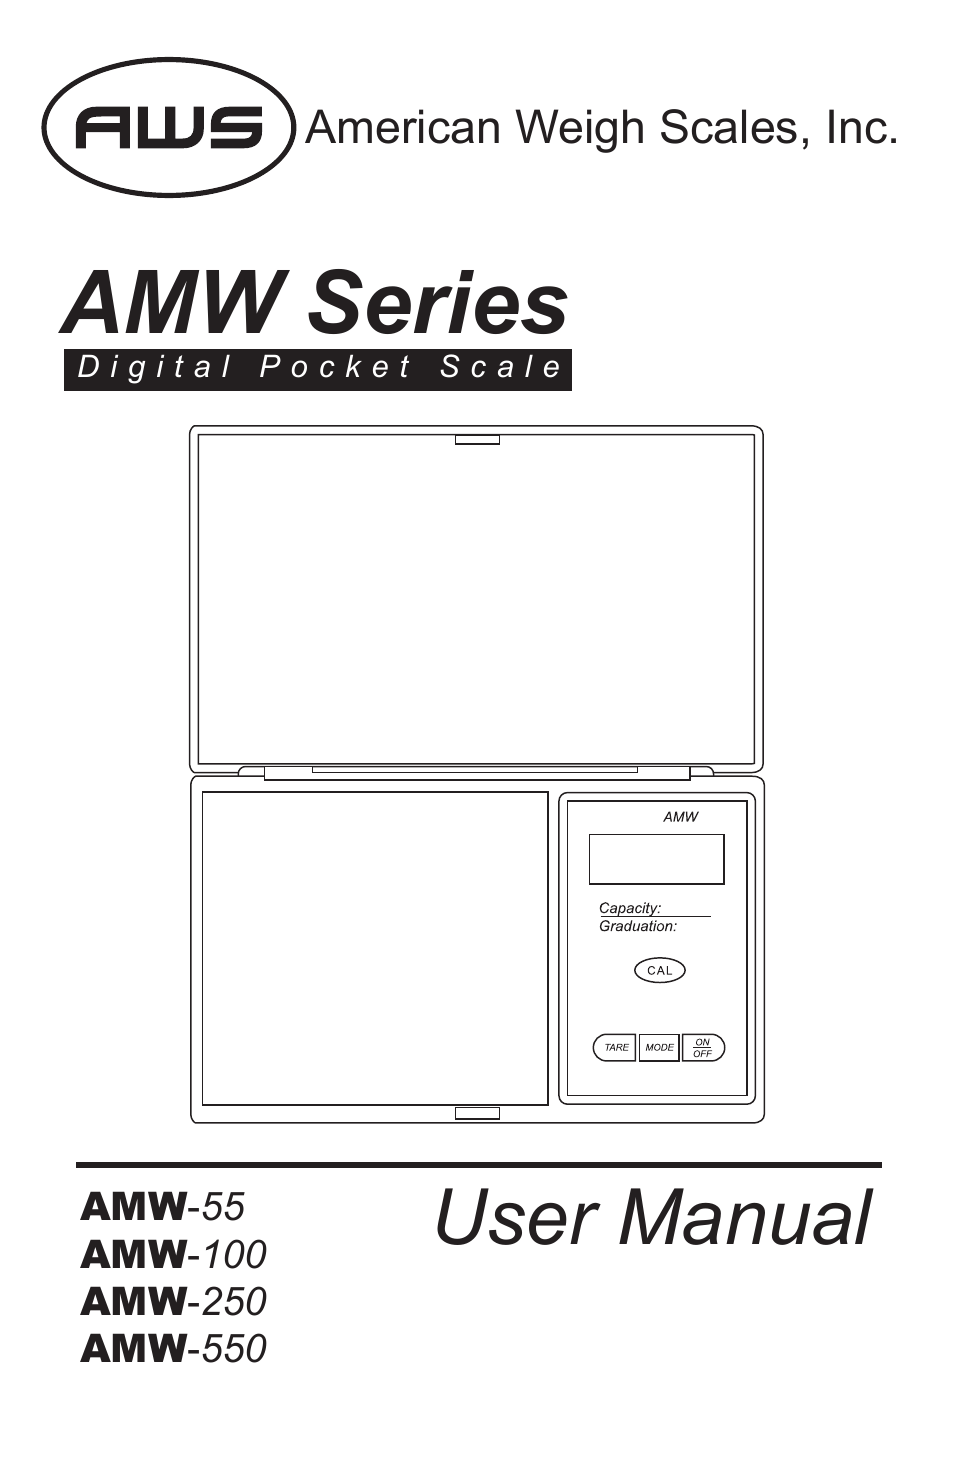 AMW-550